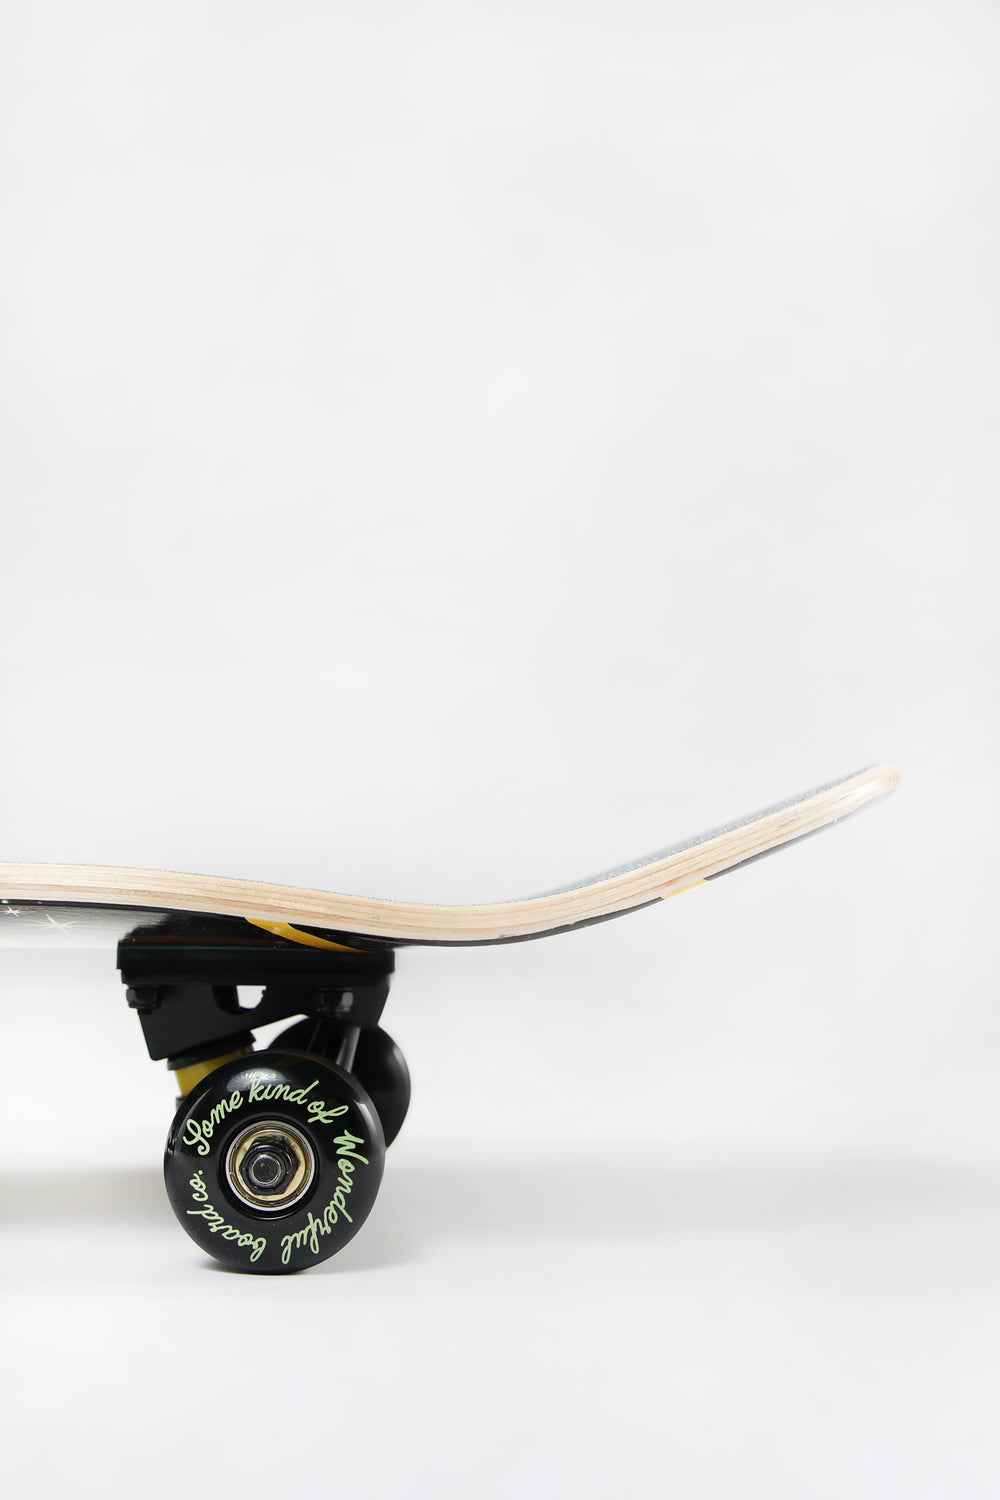 Skateboard Imprimé Ovni Wonderful 7.75